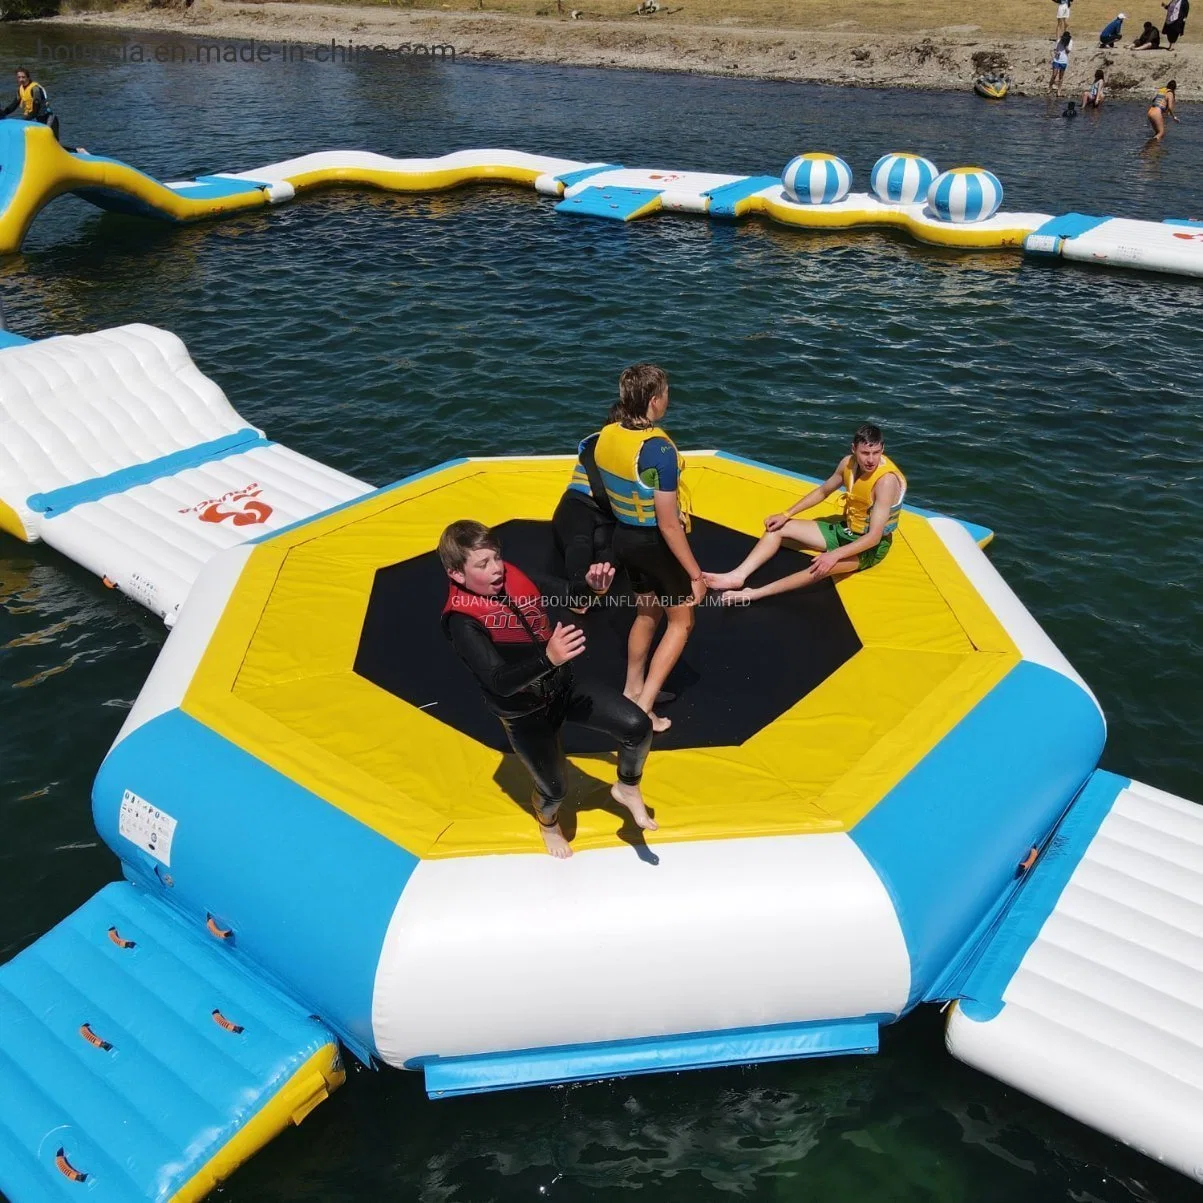 Trampoline gonflable pour lac, trampoline flottant, entreprise de jeux gonflables.